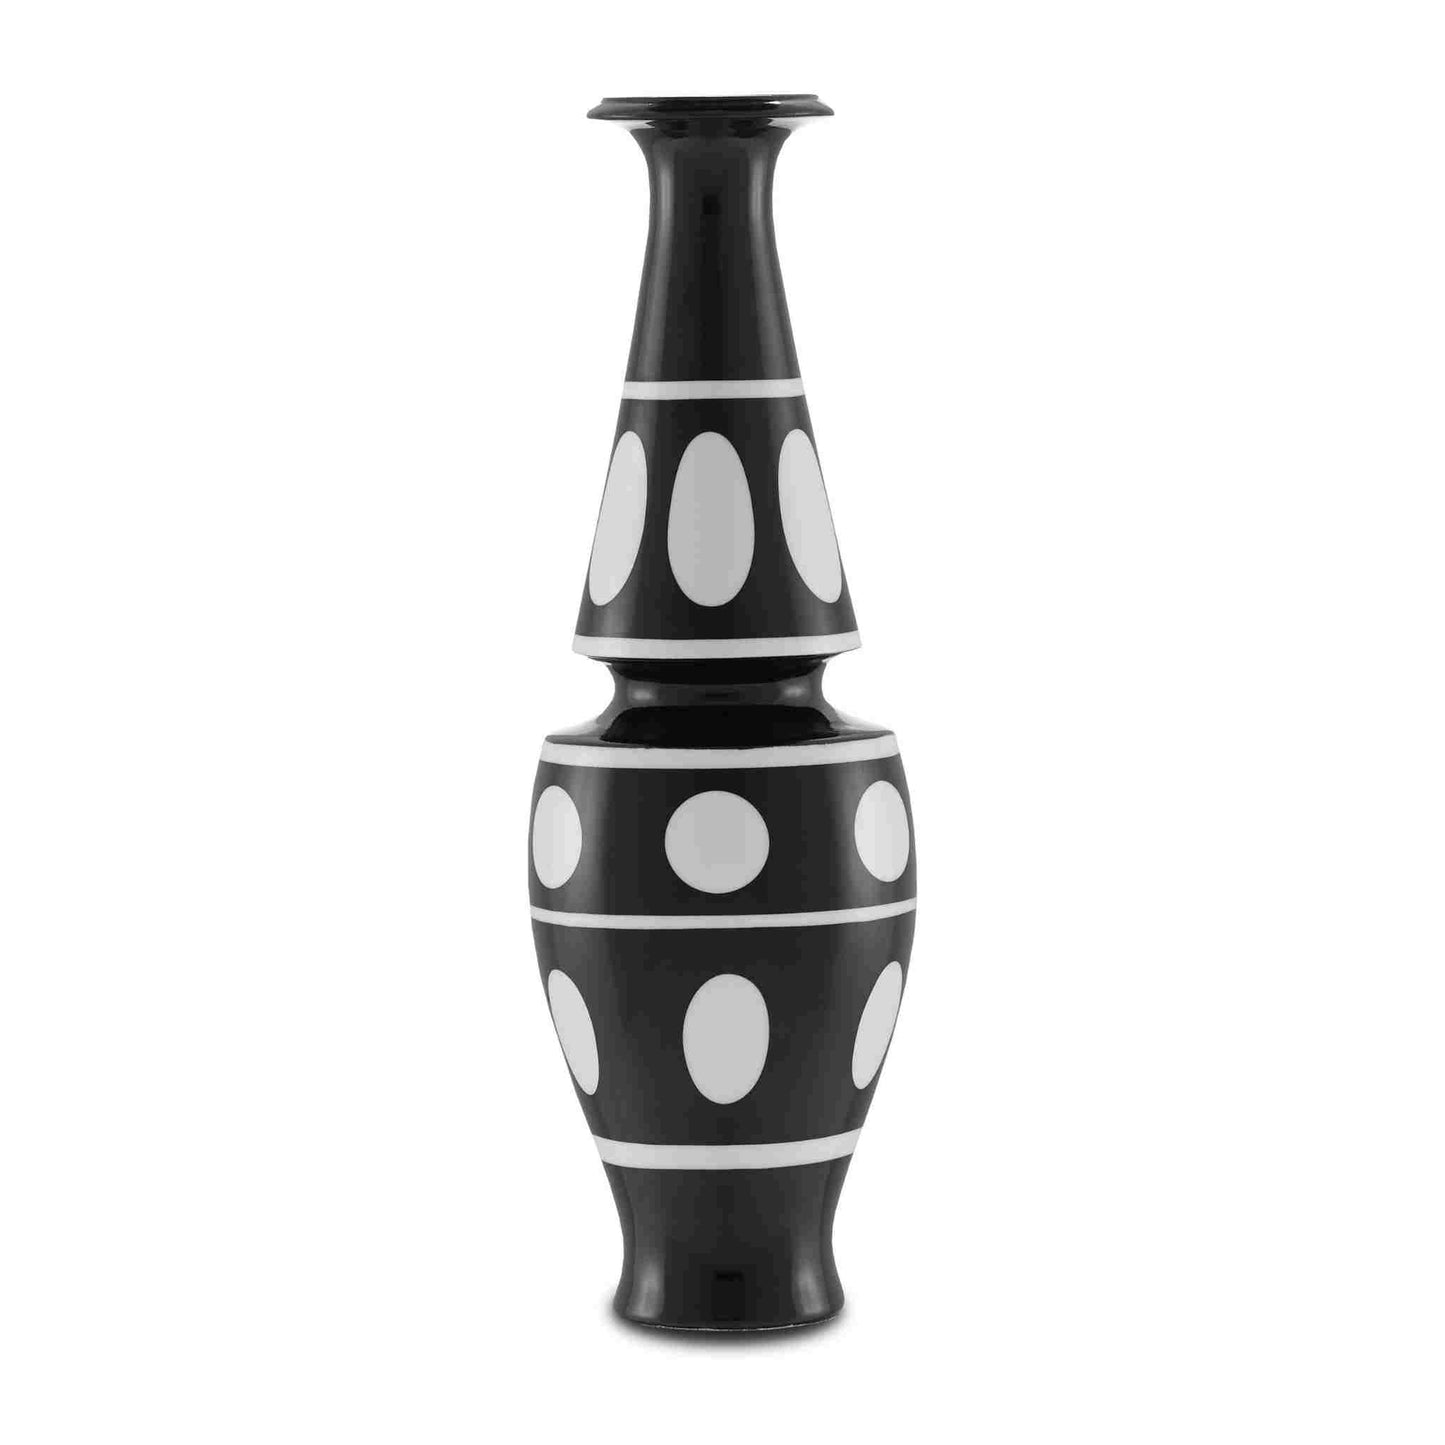 De Luca Black and White Vase 15.75"h x 5"dia.